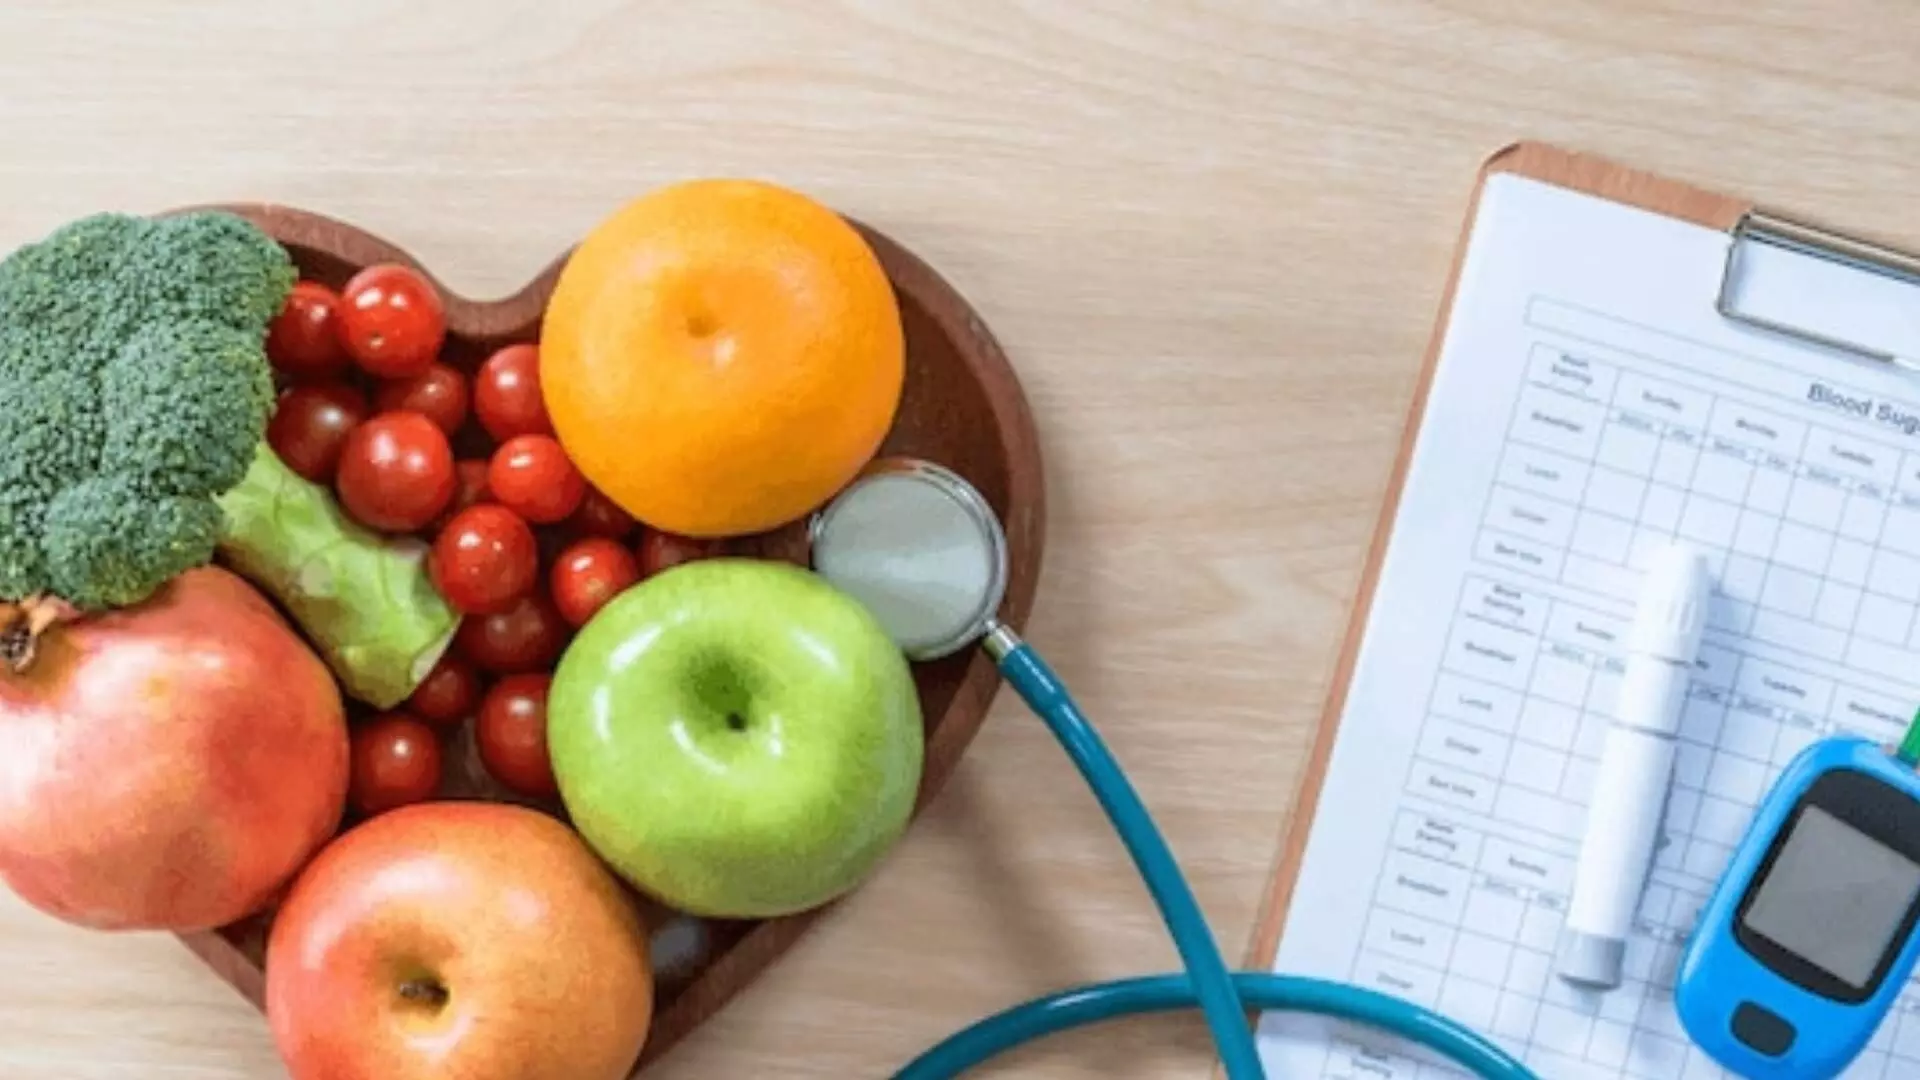 Diabetic असताना तुम्ही नियमित फळं खात असाल तर?  डॉ. संग्राम पाटील